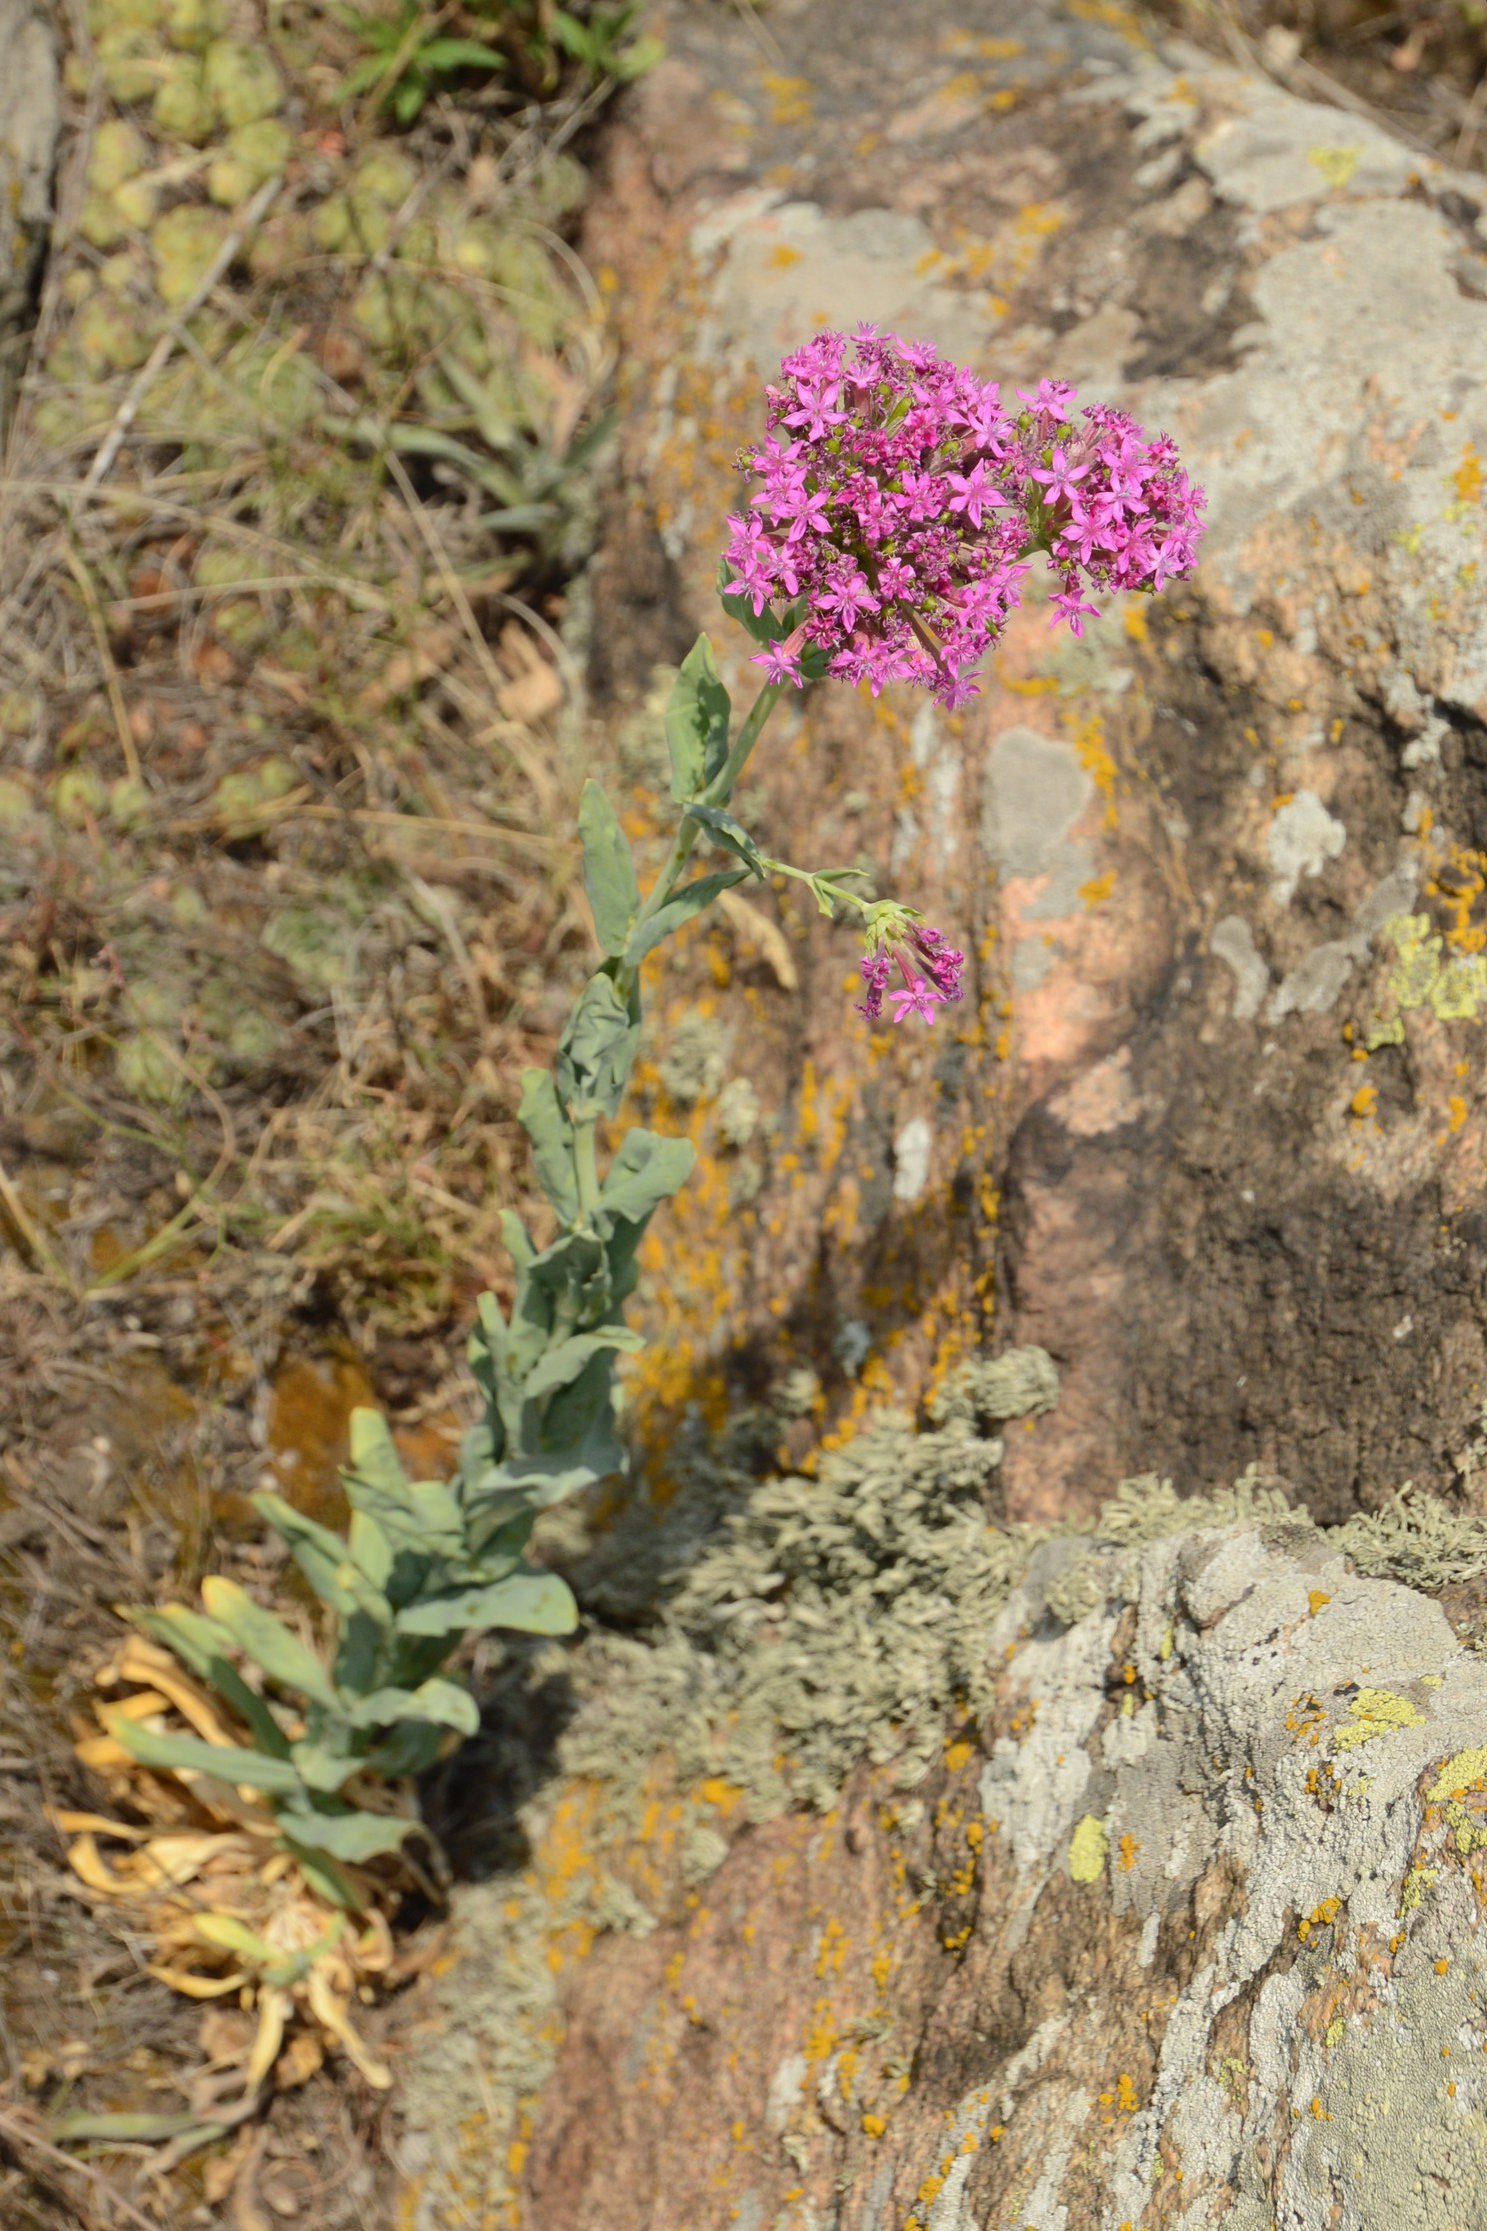 Смілка бузька (Silene hypanica) – ендемічний вид рослин, поширений тільки в Бузькому Гарді та його околицях, фото Дар'я Ширяєва